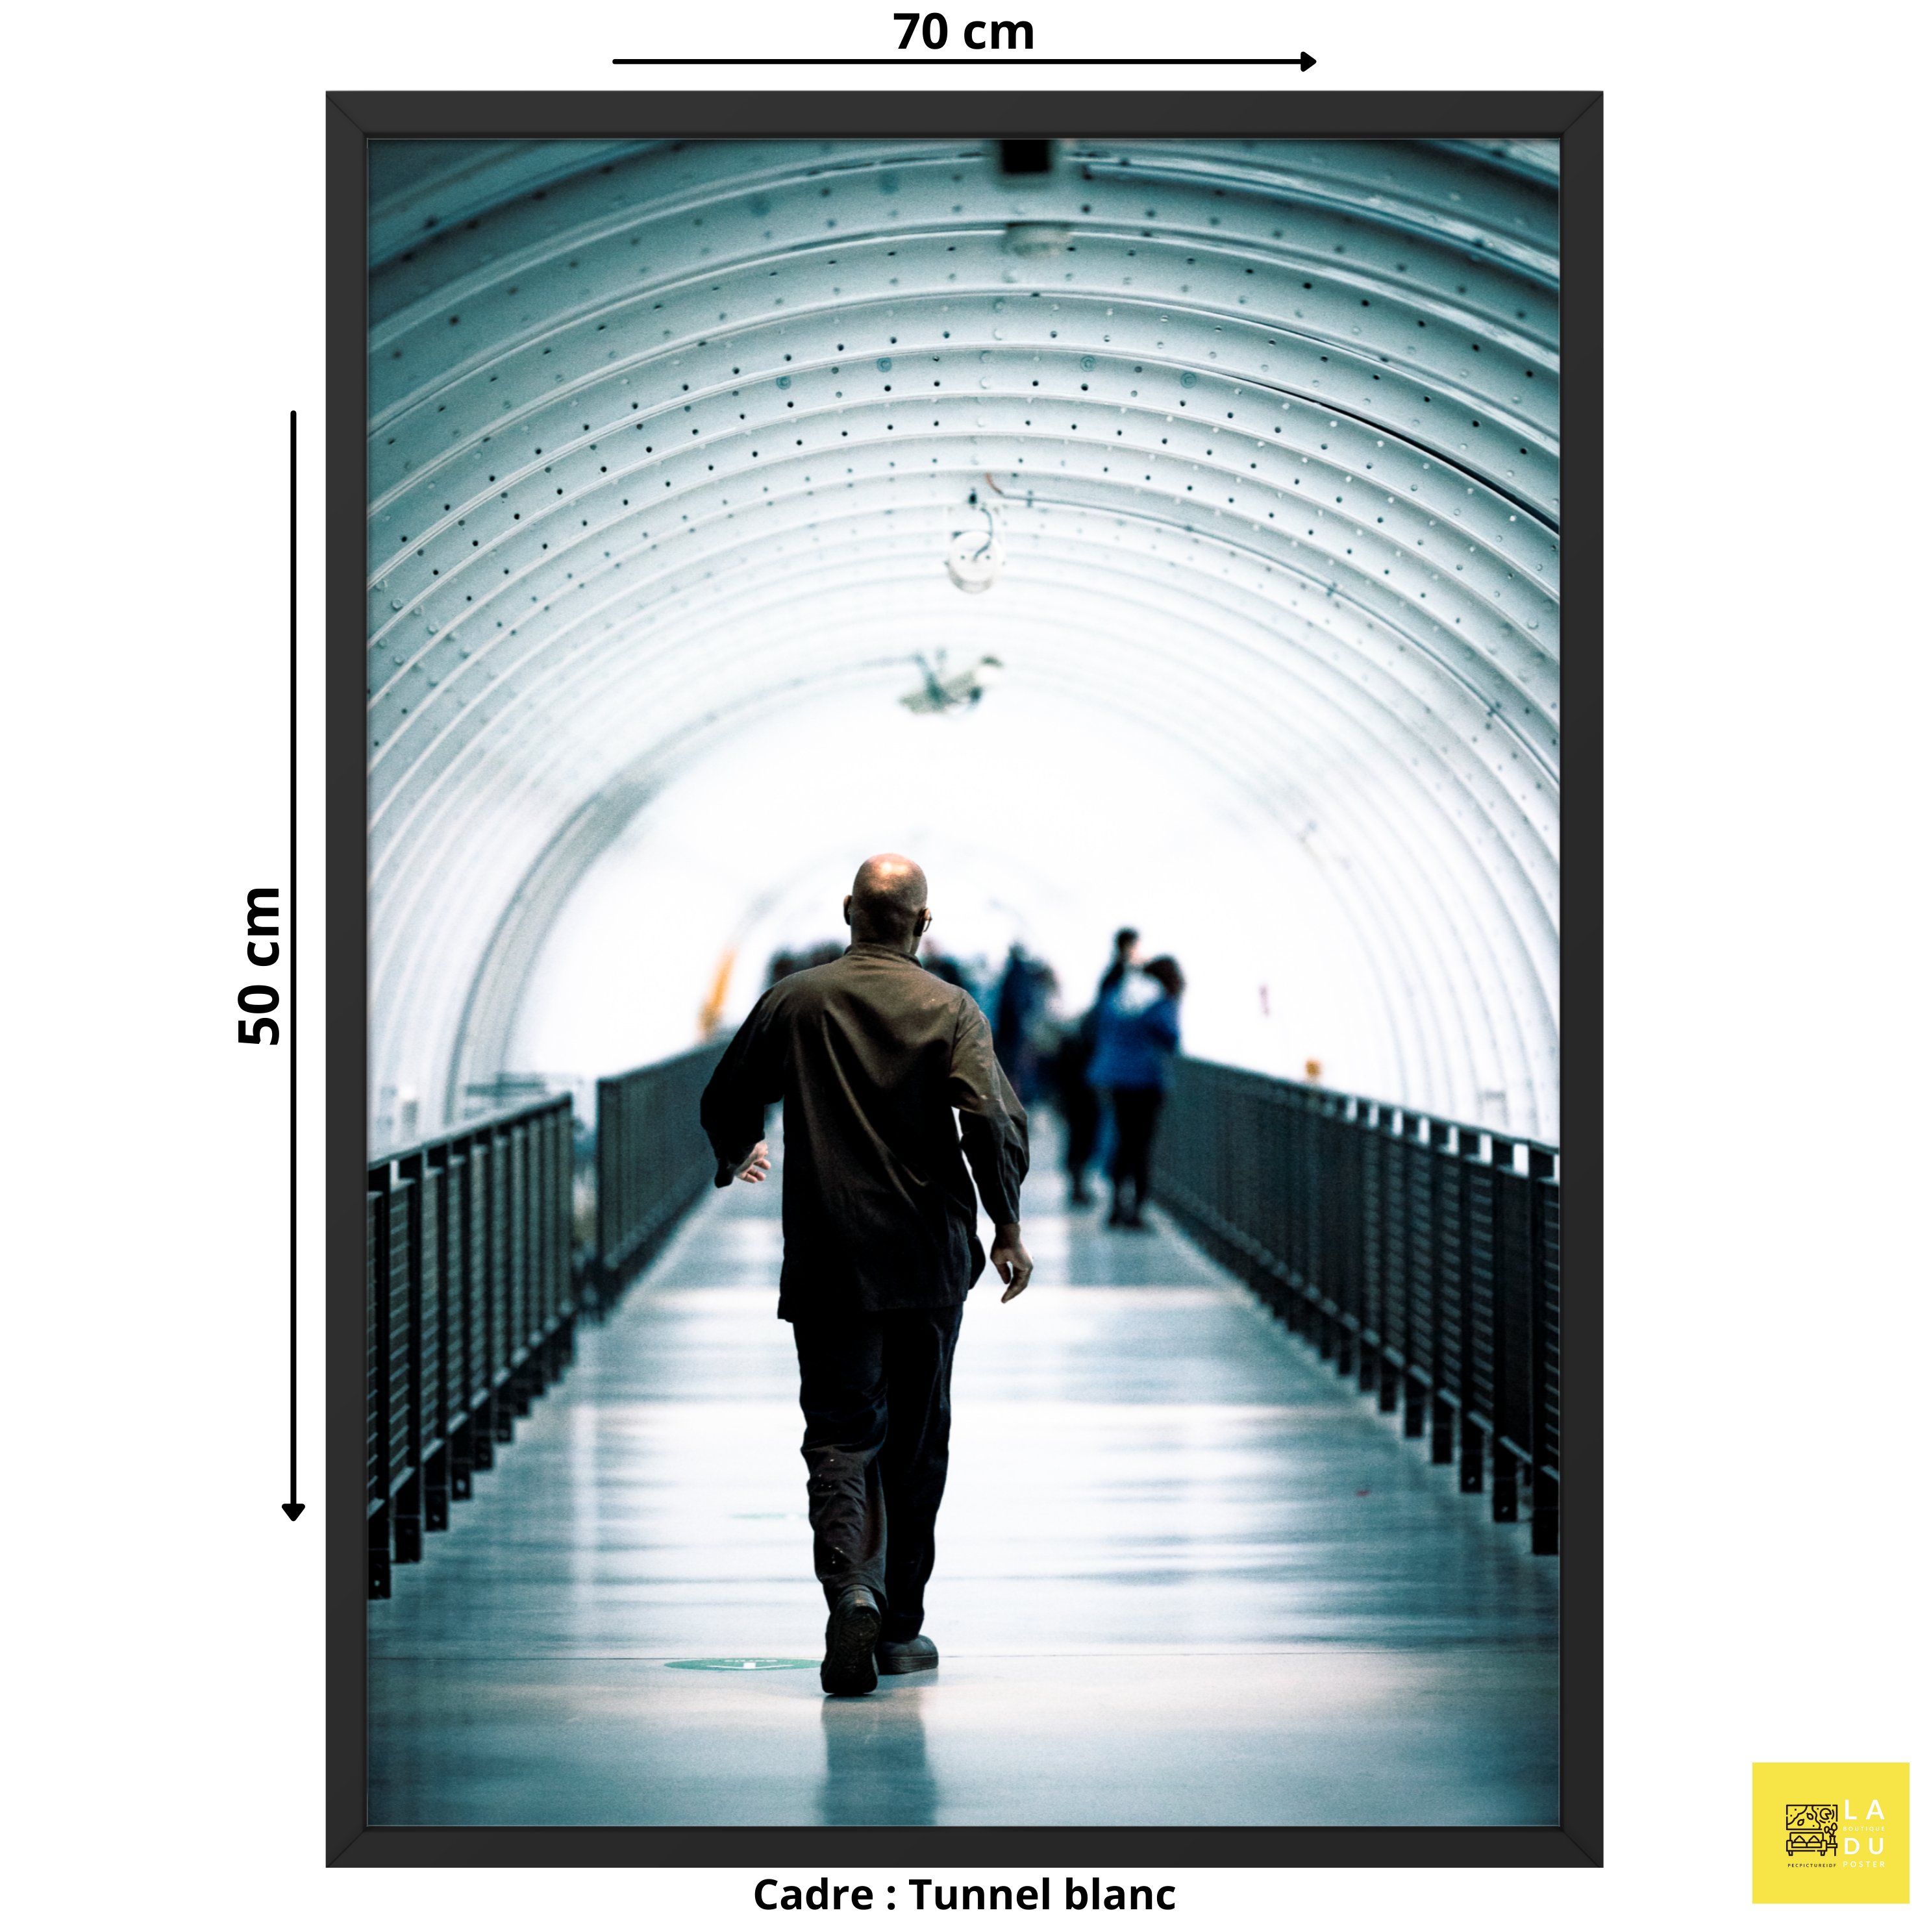 Tunnel blanc - Poster encadré Tirage limité - La boutique du poster Français